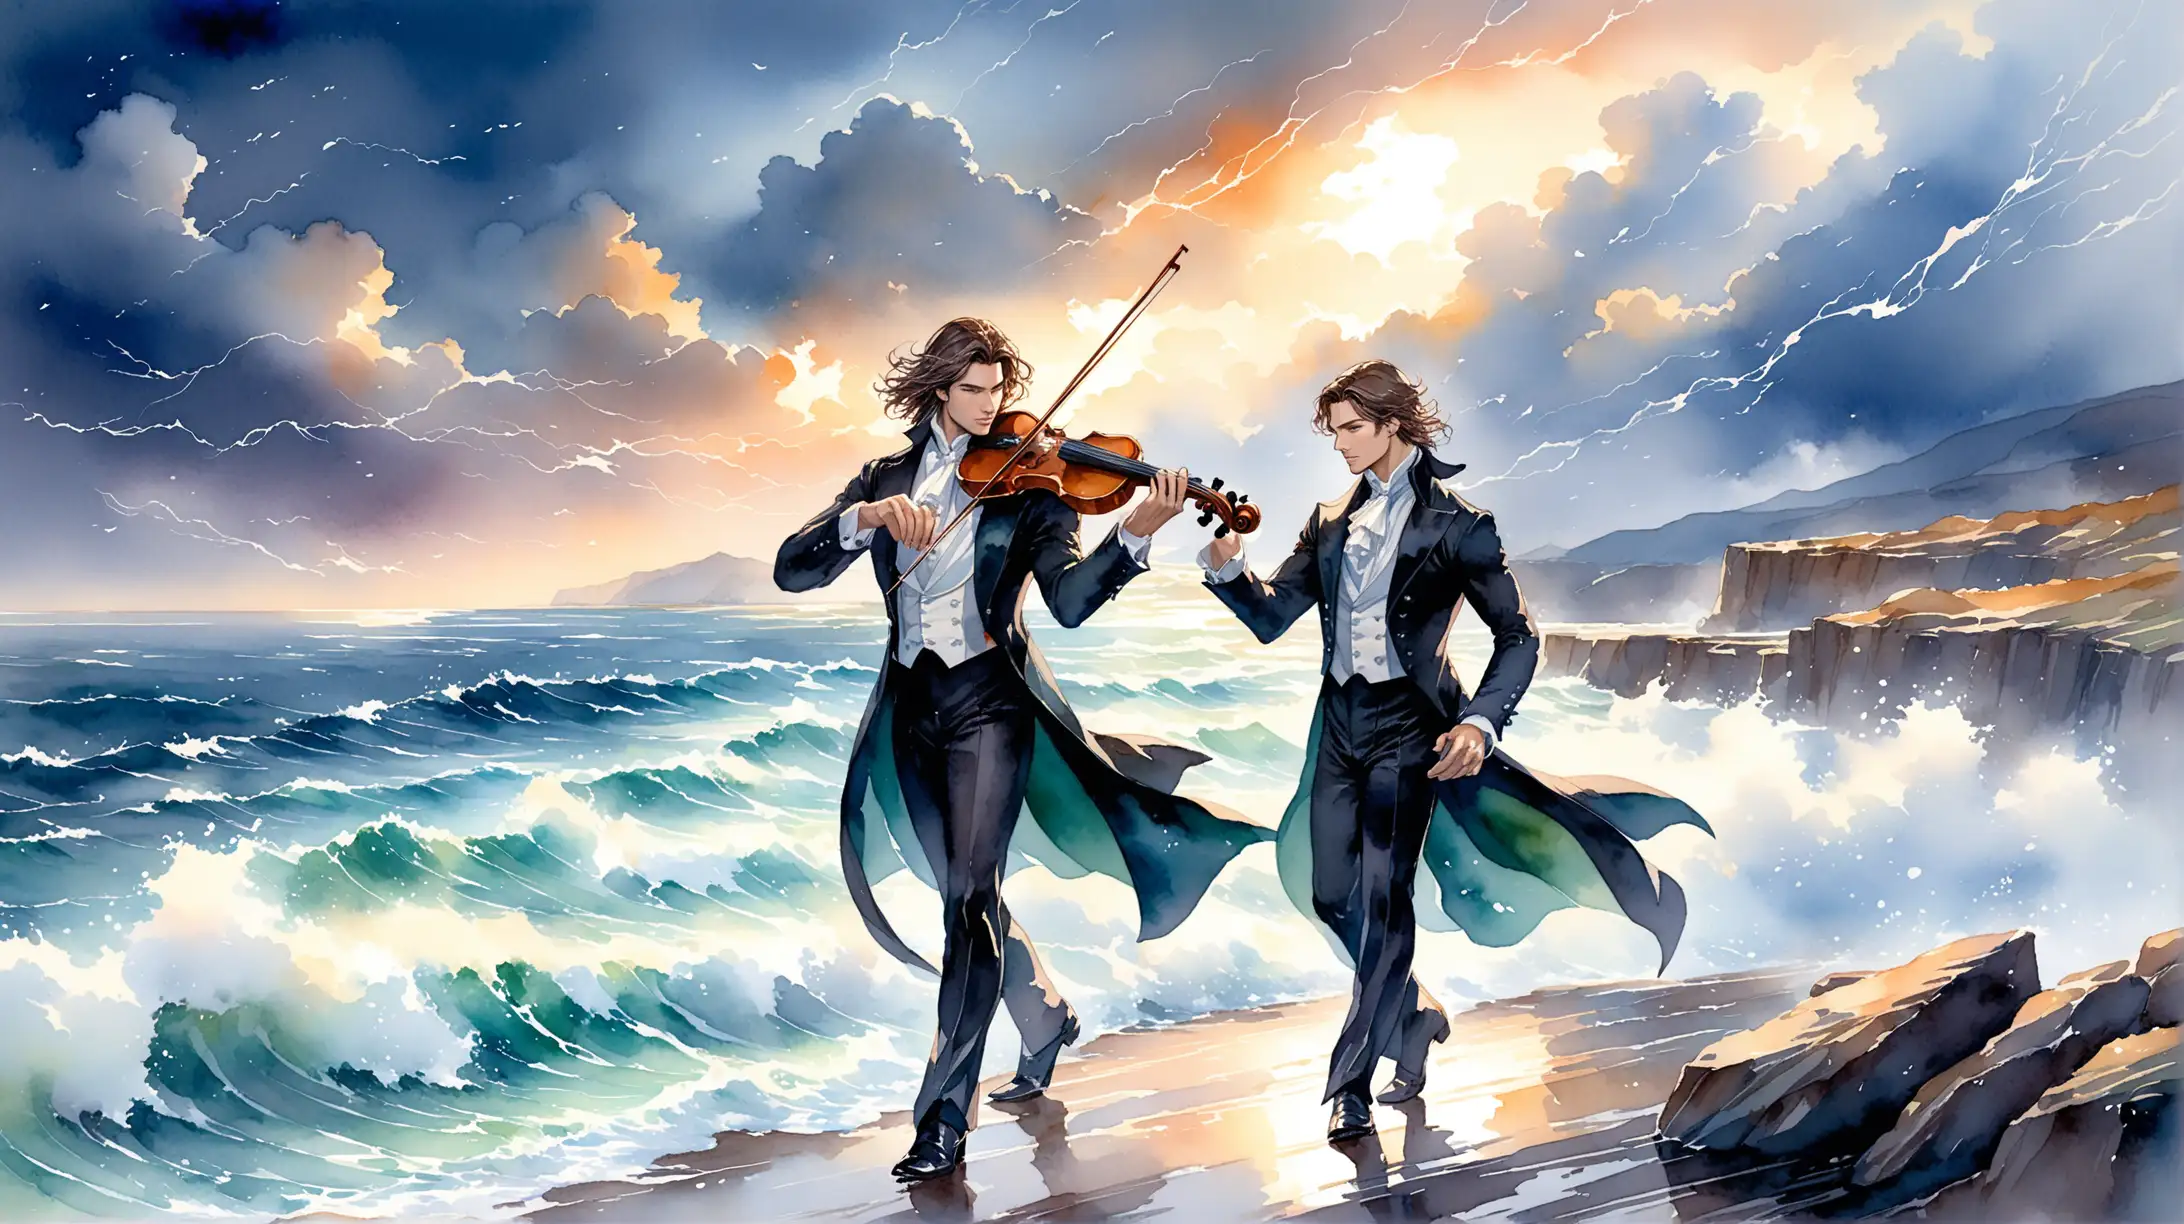 нарисовано акварелью, шторм, скалистый берег моря, красивый мужчина скрипач стоит рядом с красивым мужчиной пианистом, оба во фраках, музыка, полет, ветер, фентези, вдохновение